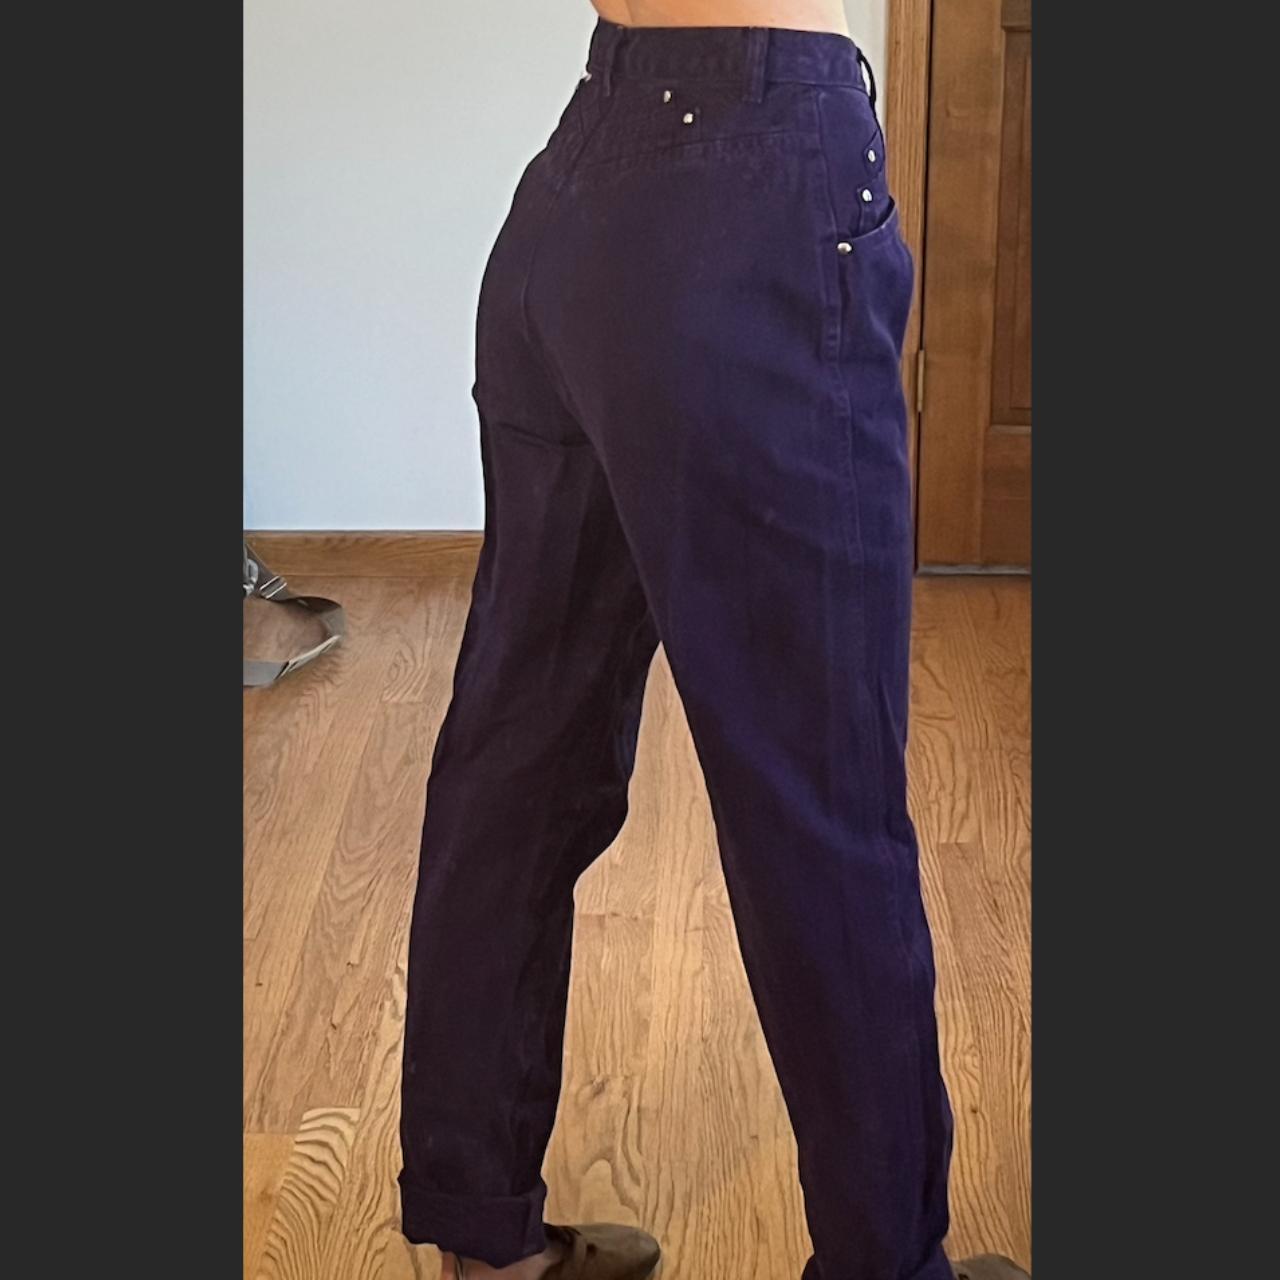 Vintage purple jeans !! No back pockets... - Depop